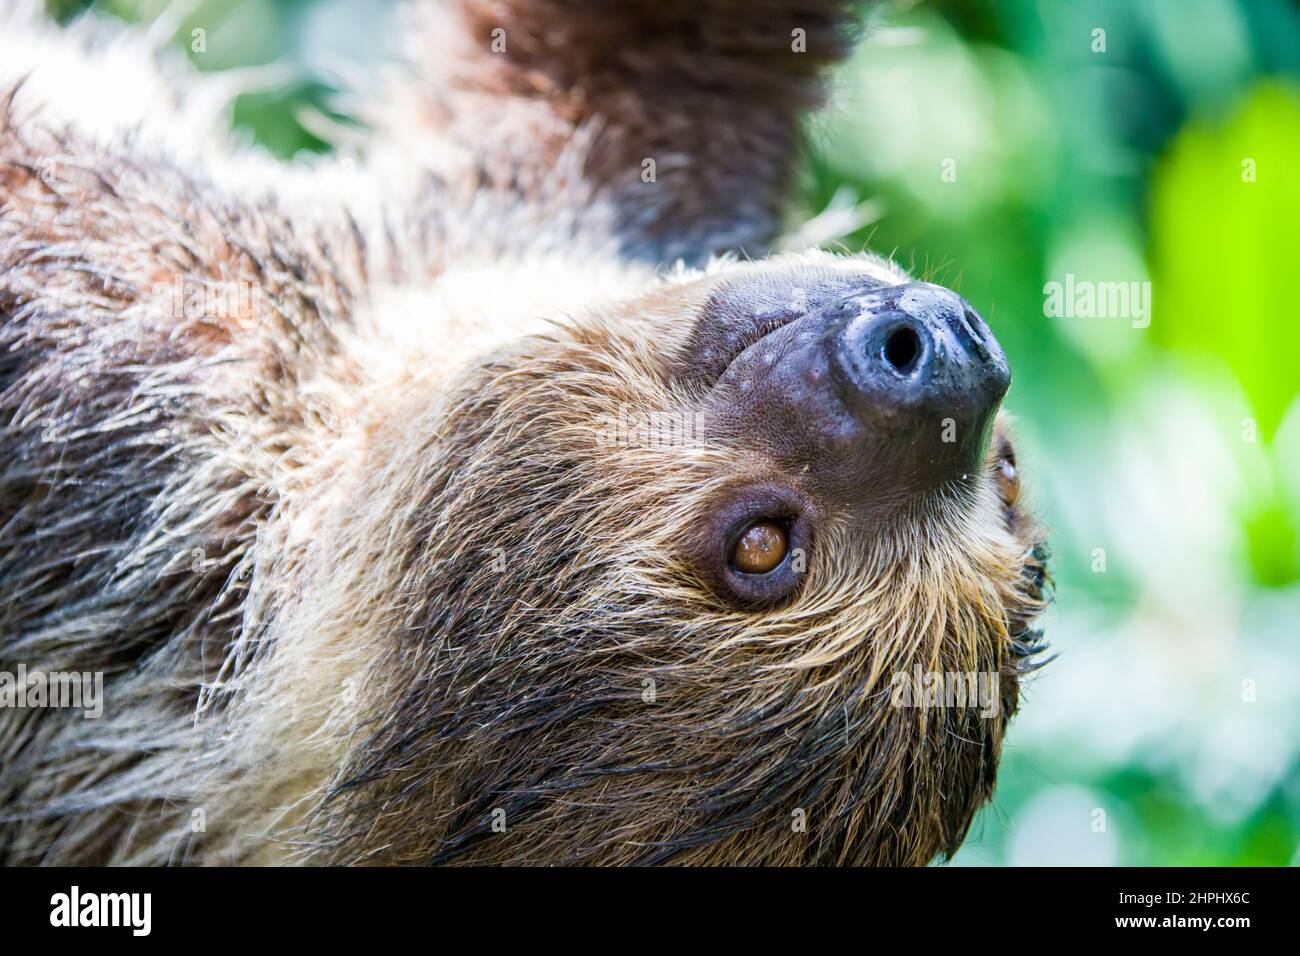 La imagen más cercana de la Sloth de dos dedos de Linneaus (Choloepus didactylus). Una especie de perezoso de América del Sur, tiene pelo más largo, ojos más grandes Foto de stock